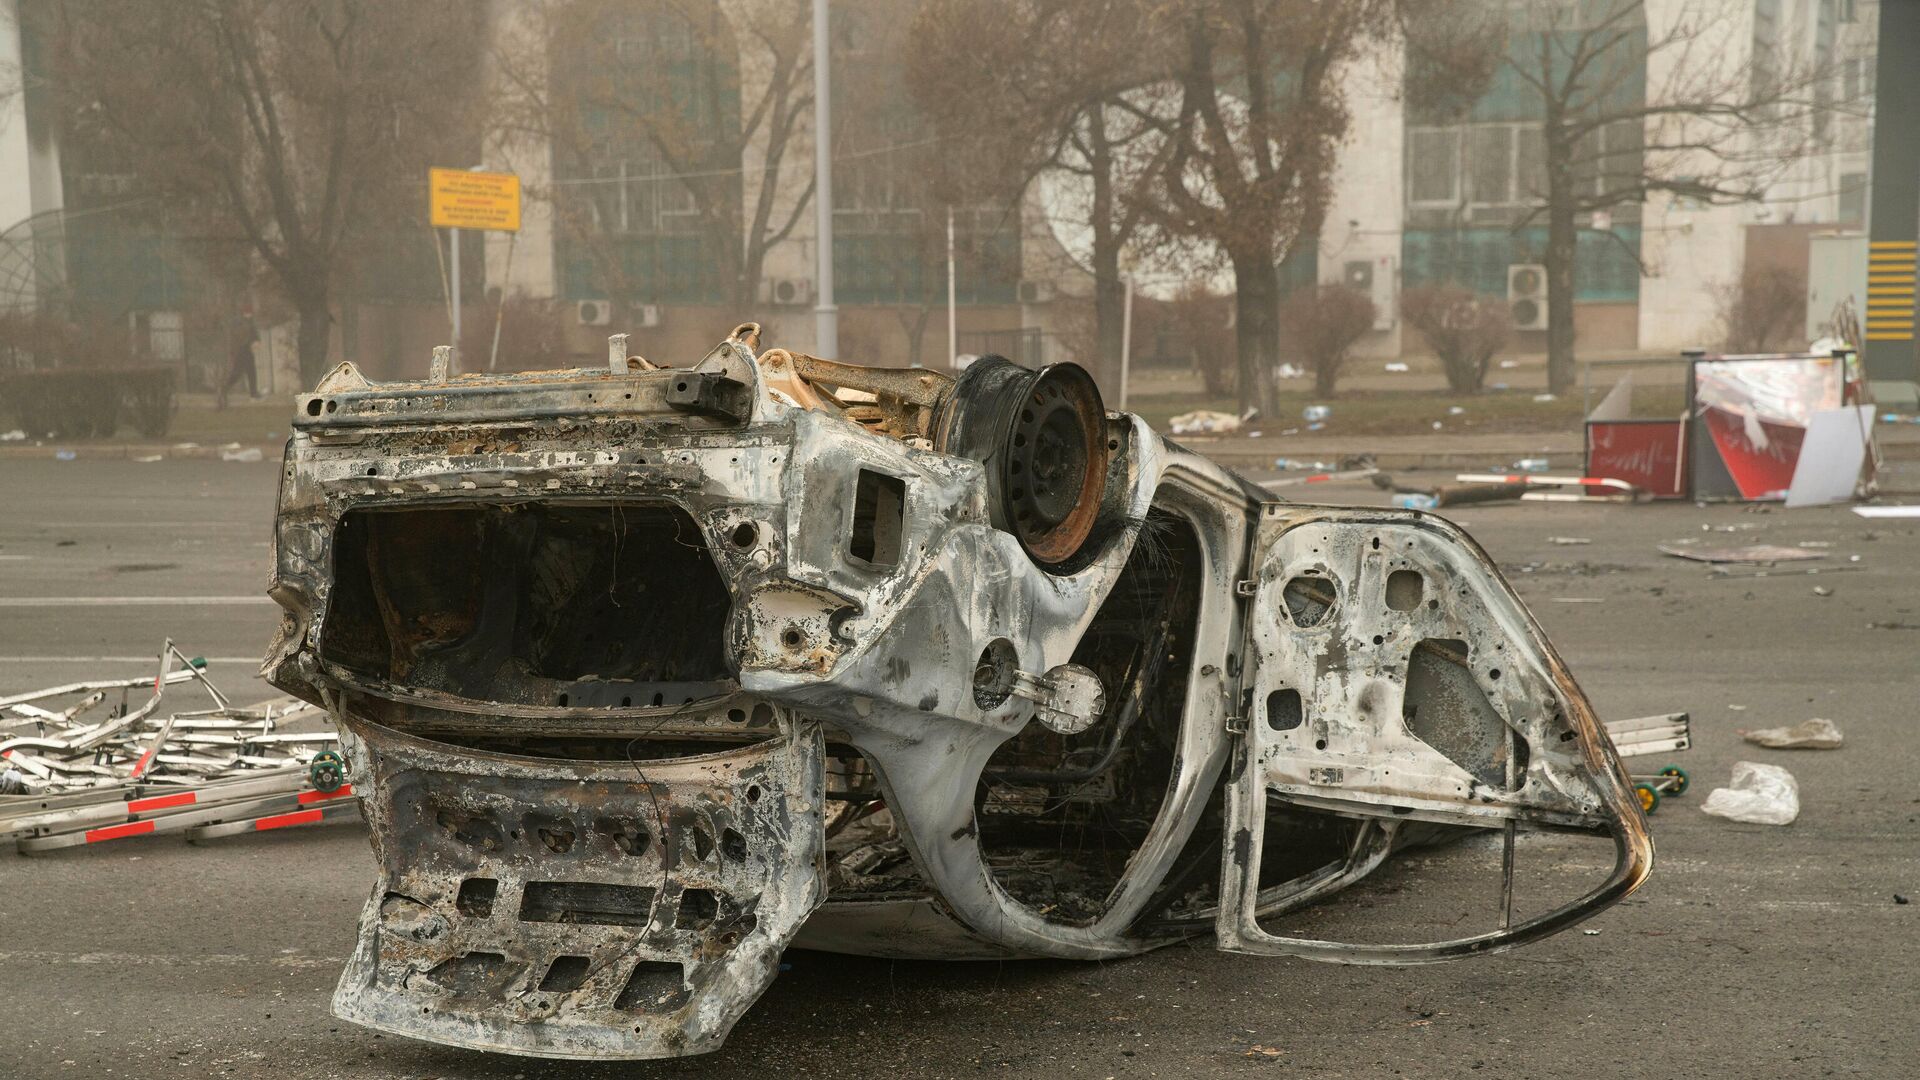 Сгоревший автомобиль в центре Алматы 6 января 2022 года - Sputnik Беларусь, 1920, 06.01.2022